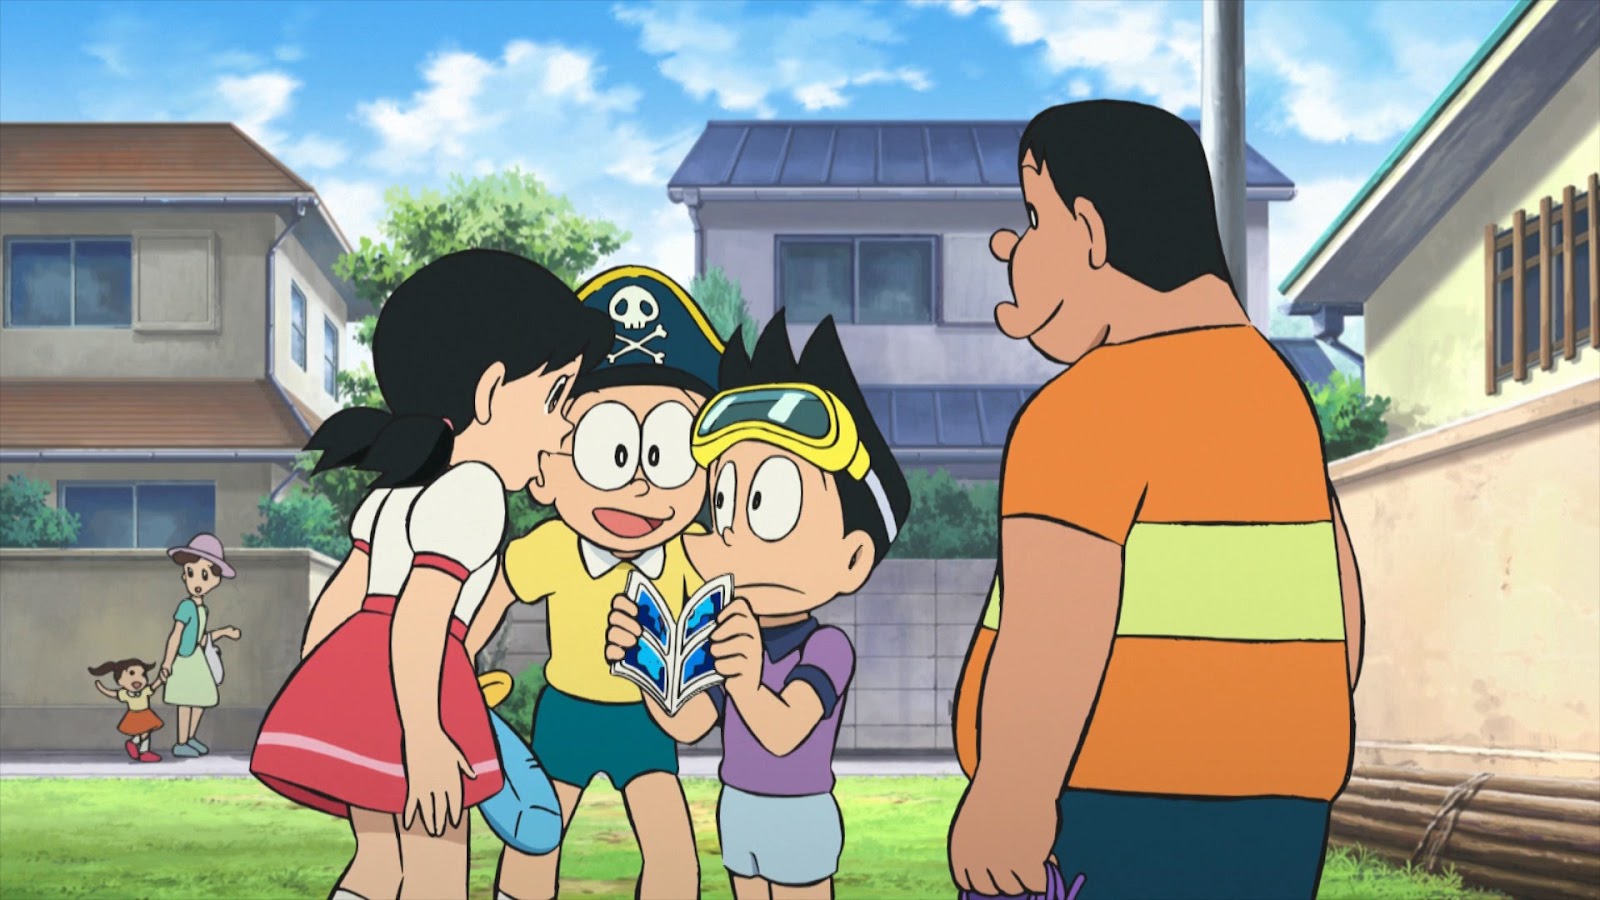 Doraemon: Nobita y la leyenda de las sirenas (2010) 1080p WEB-DL Latino